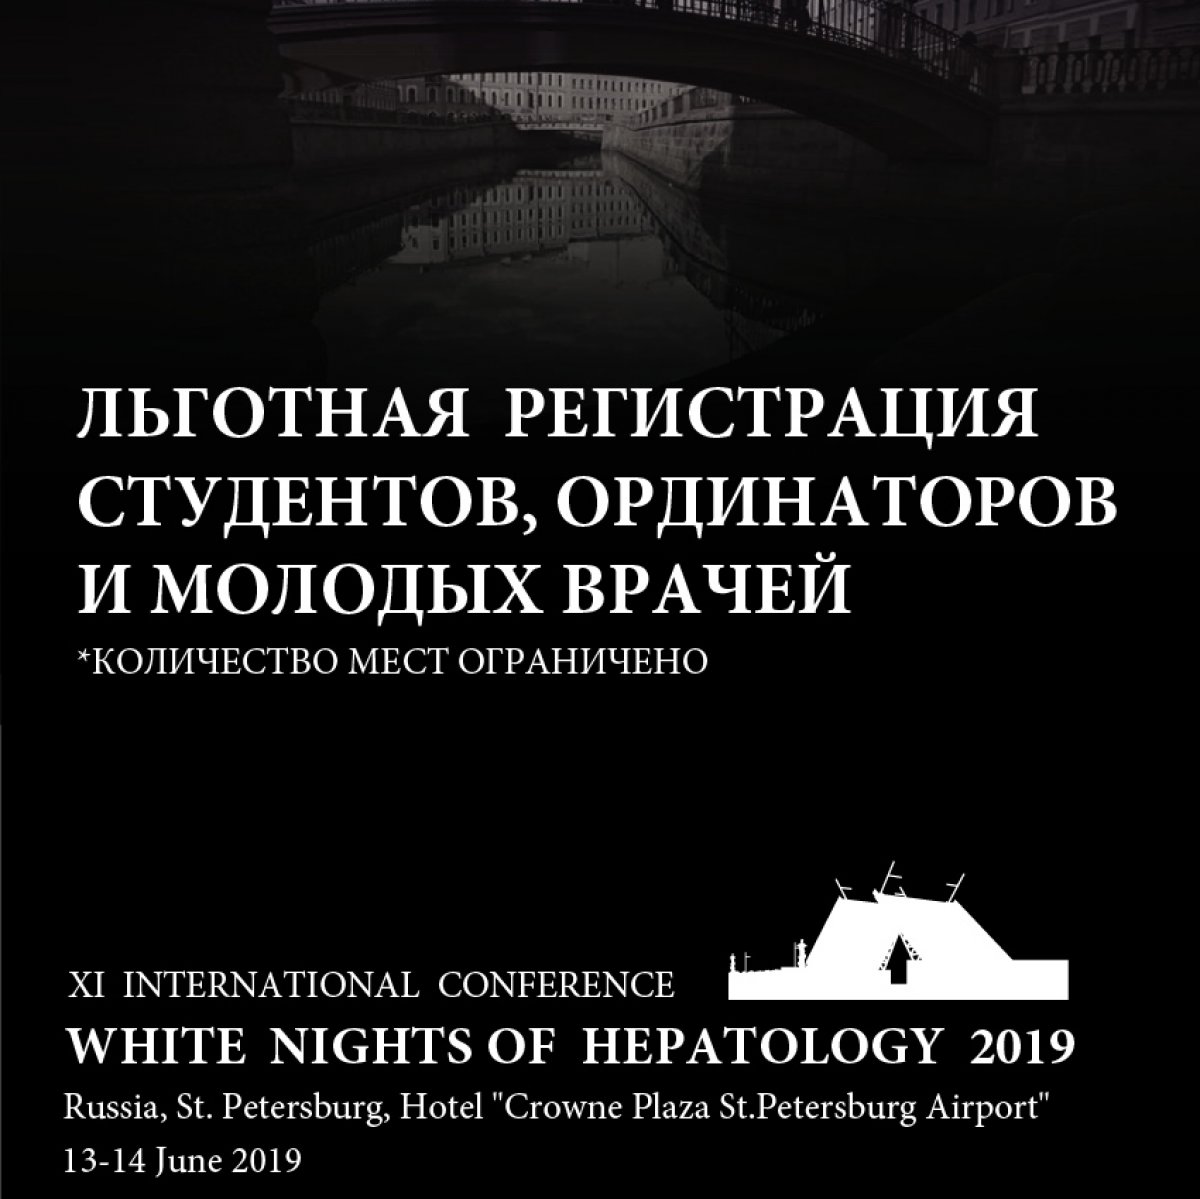 Ежегодно в Санкт-Петербурге проходит Международная конференция «Белые ночи гепатологии». Видные ученые и практикующие врачи из разных стран обмениваются наиболее актуальной информацией и опытом.